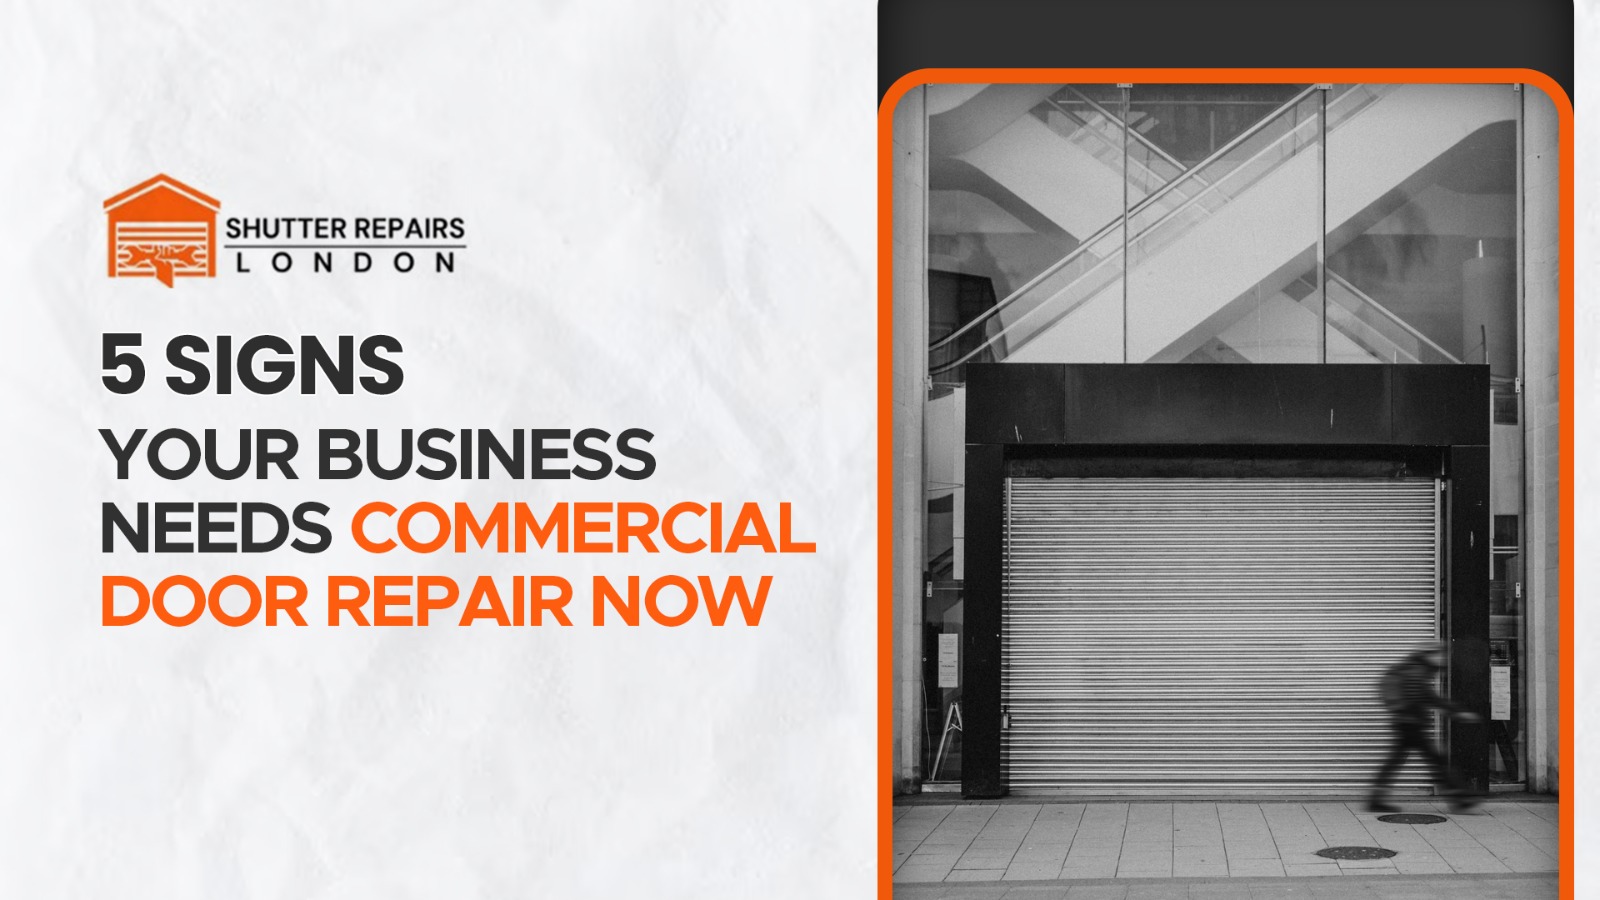 5 Signs Your Business Needs Commercial Shutter Door Repair Now